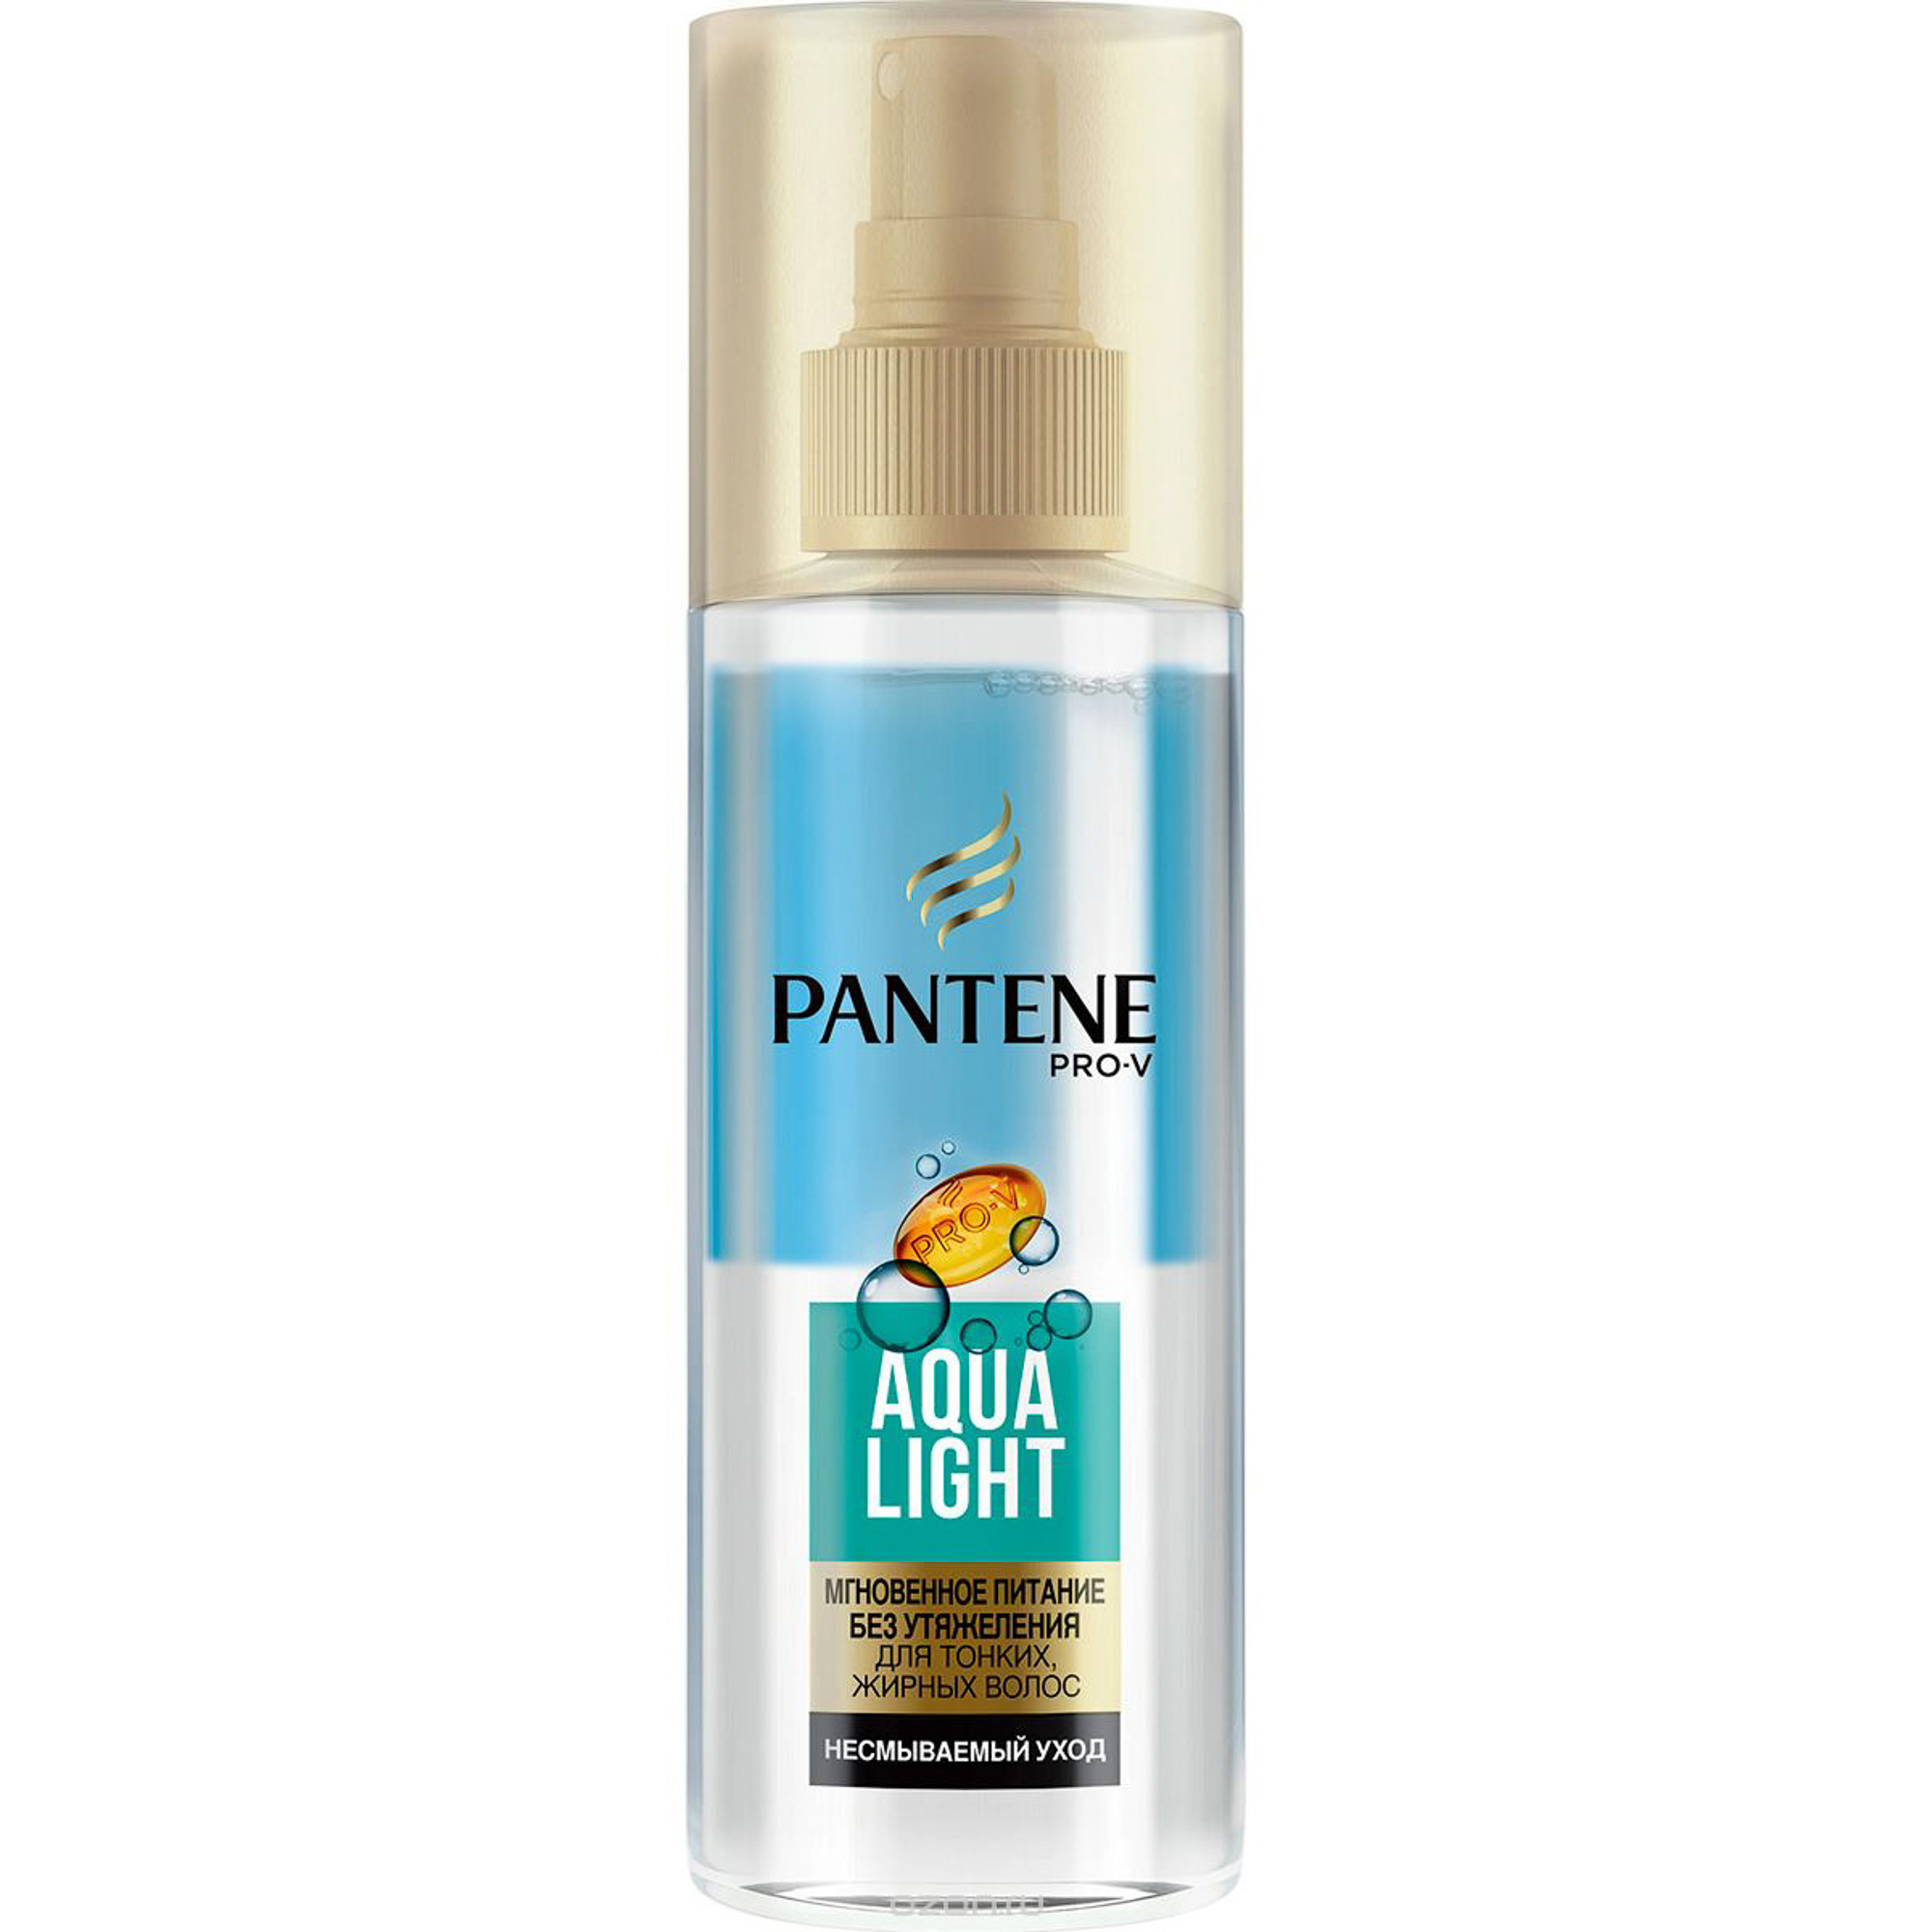 Спрей для волос Pantene Aqua Light Легкий питательный двухфазный спрей 150 мл  - Купить